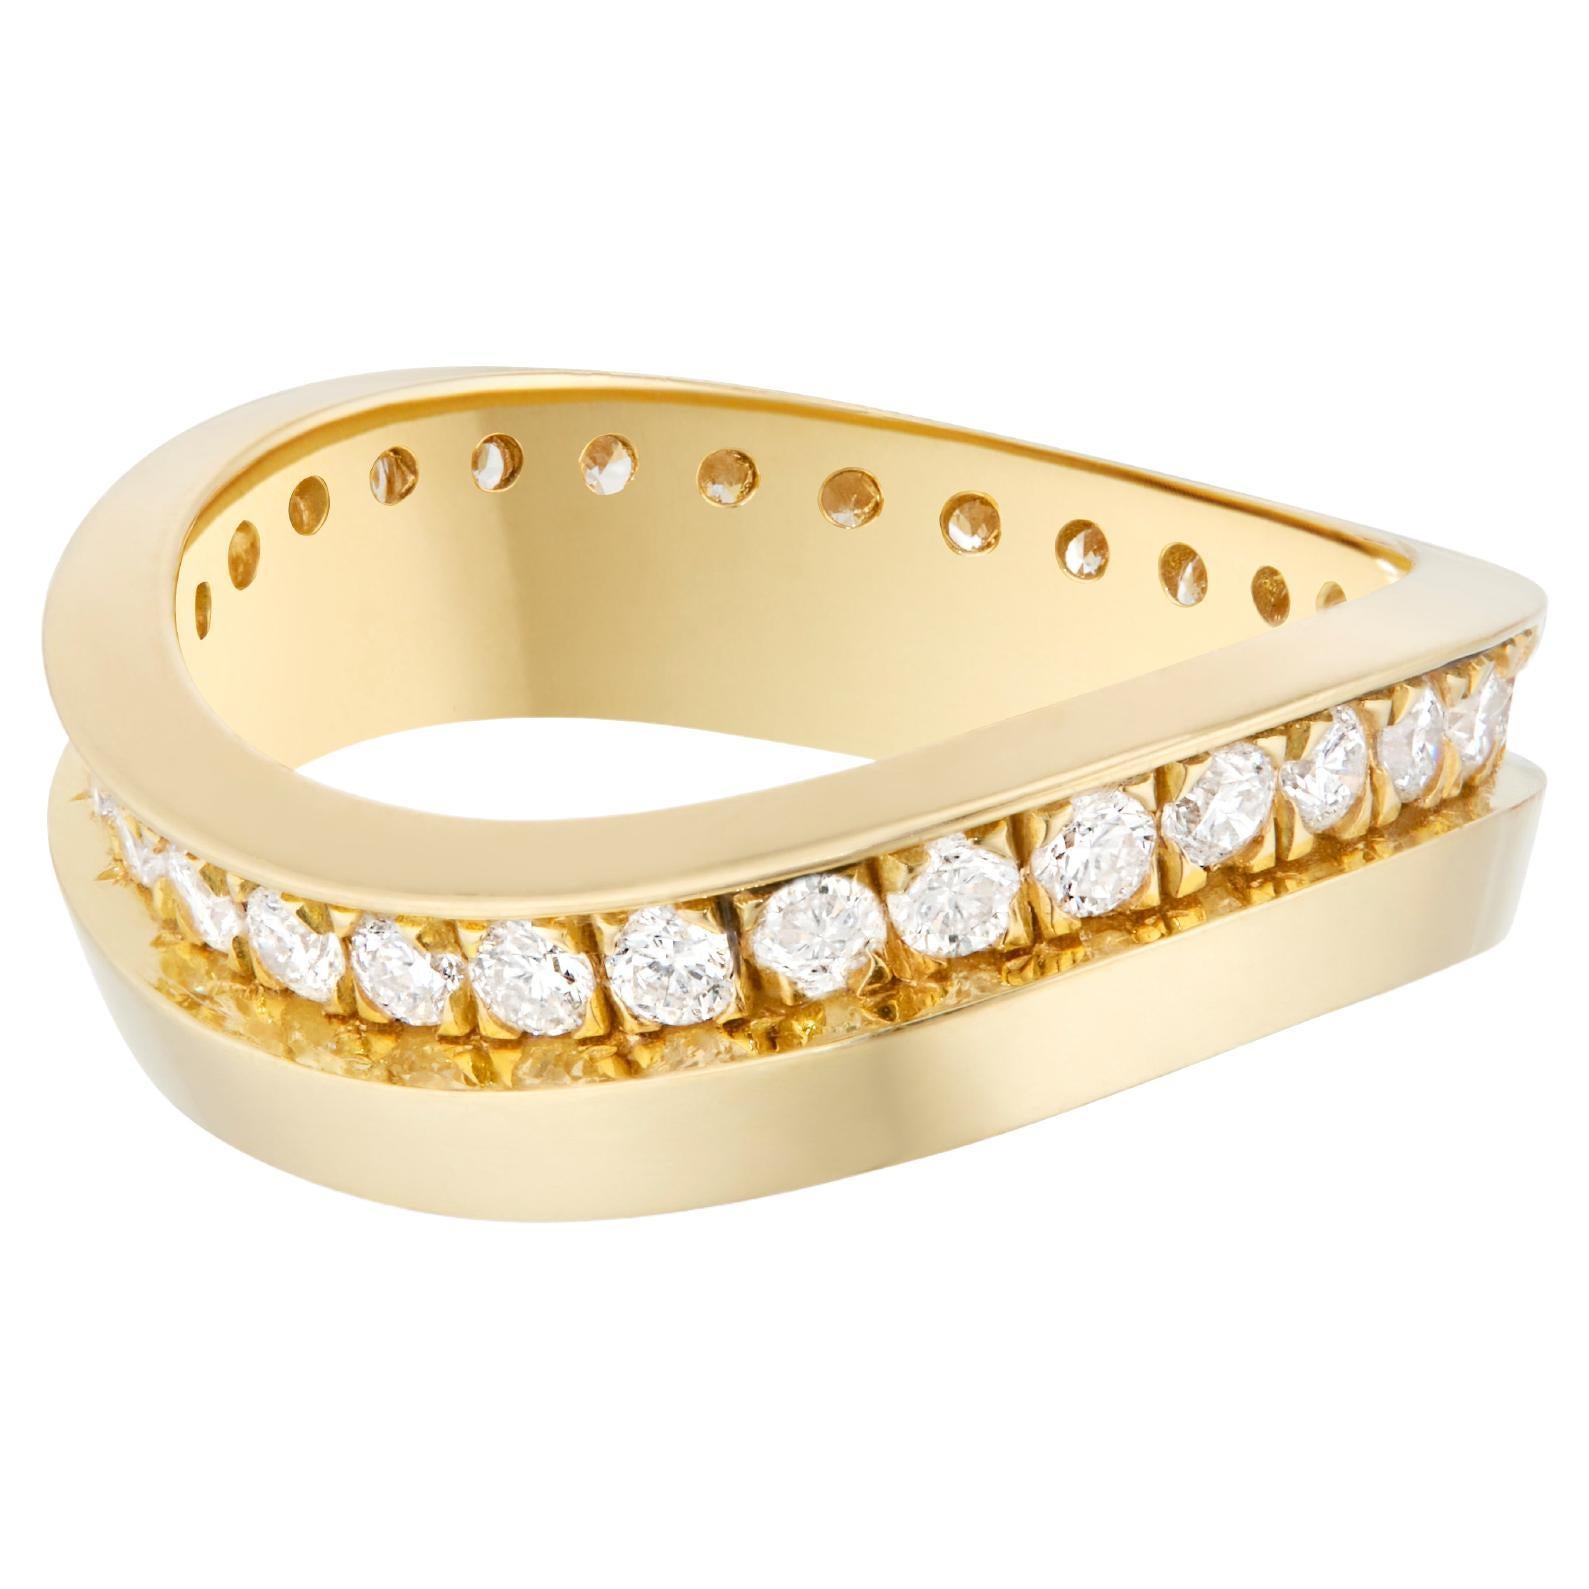 Casey Perez Gestufter Stapelbarer Ring aus 18 Karat Gold und Diamant Wave Band - Größe 8